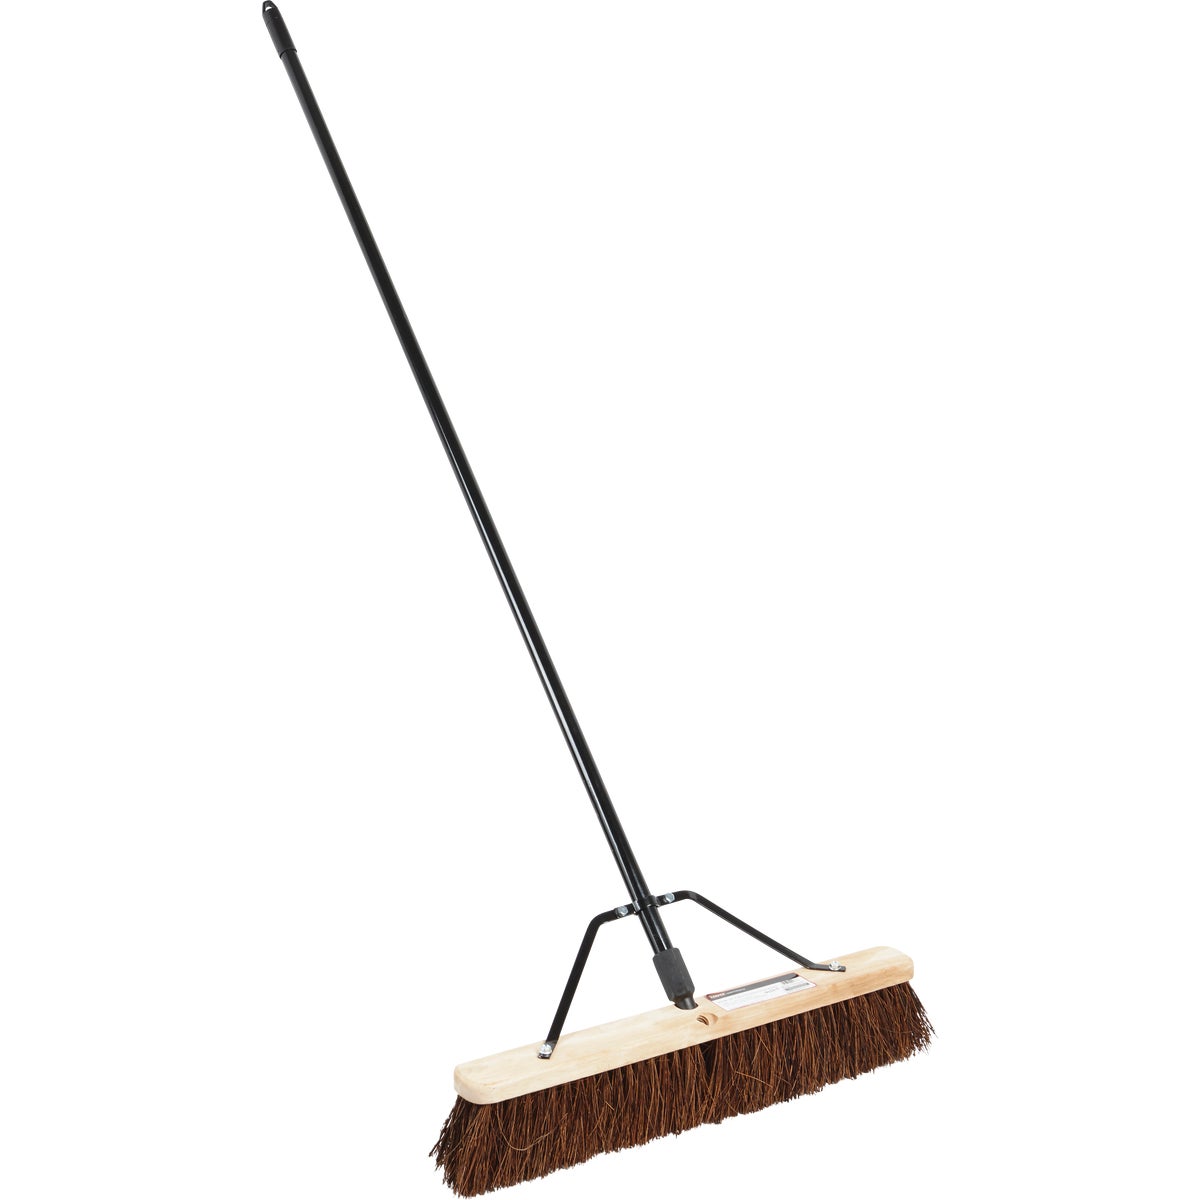 Item 612206, 24 In. rough surface palmyra push broom.